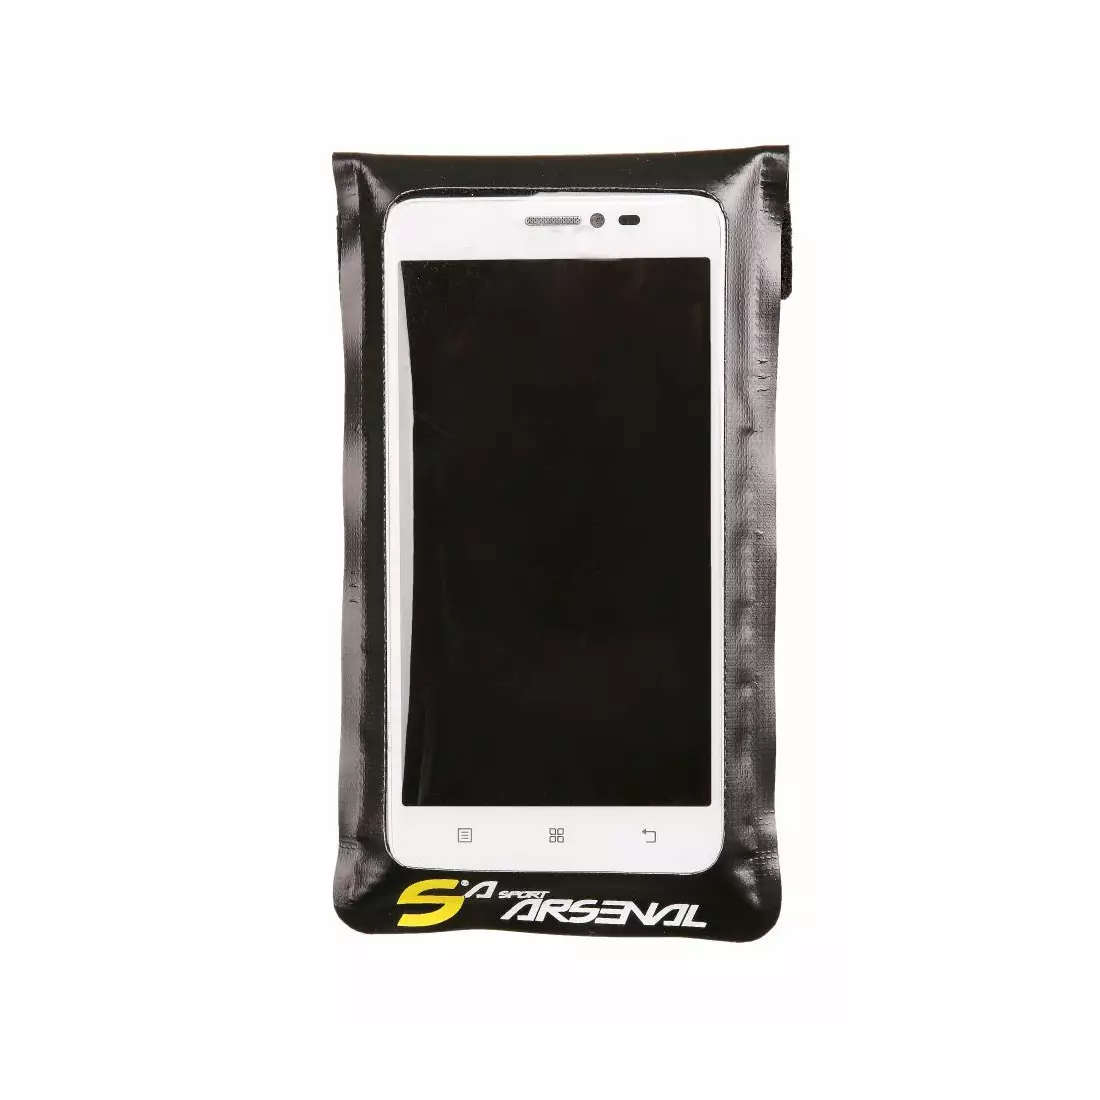 SPORT ARSENAL 531 Pouzdro na kolo pro smartphone, střední 4,5'-5,5'